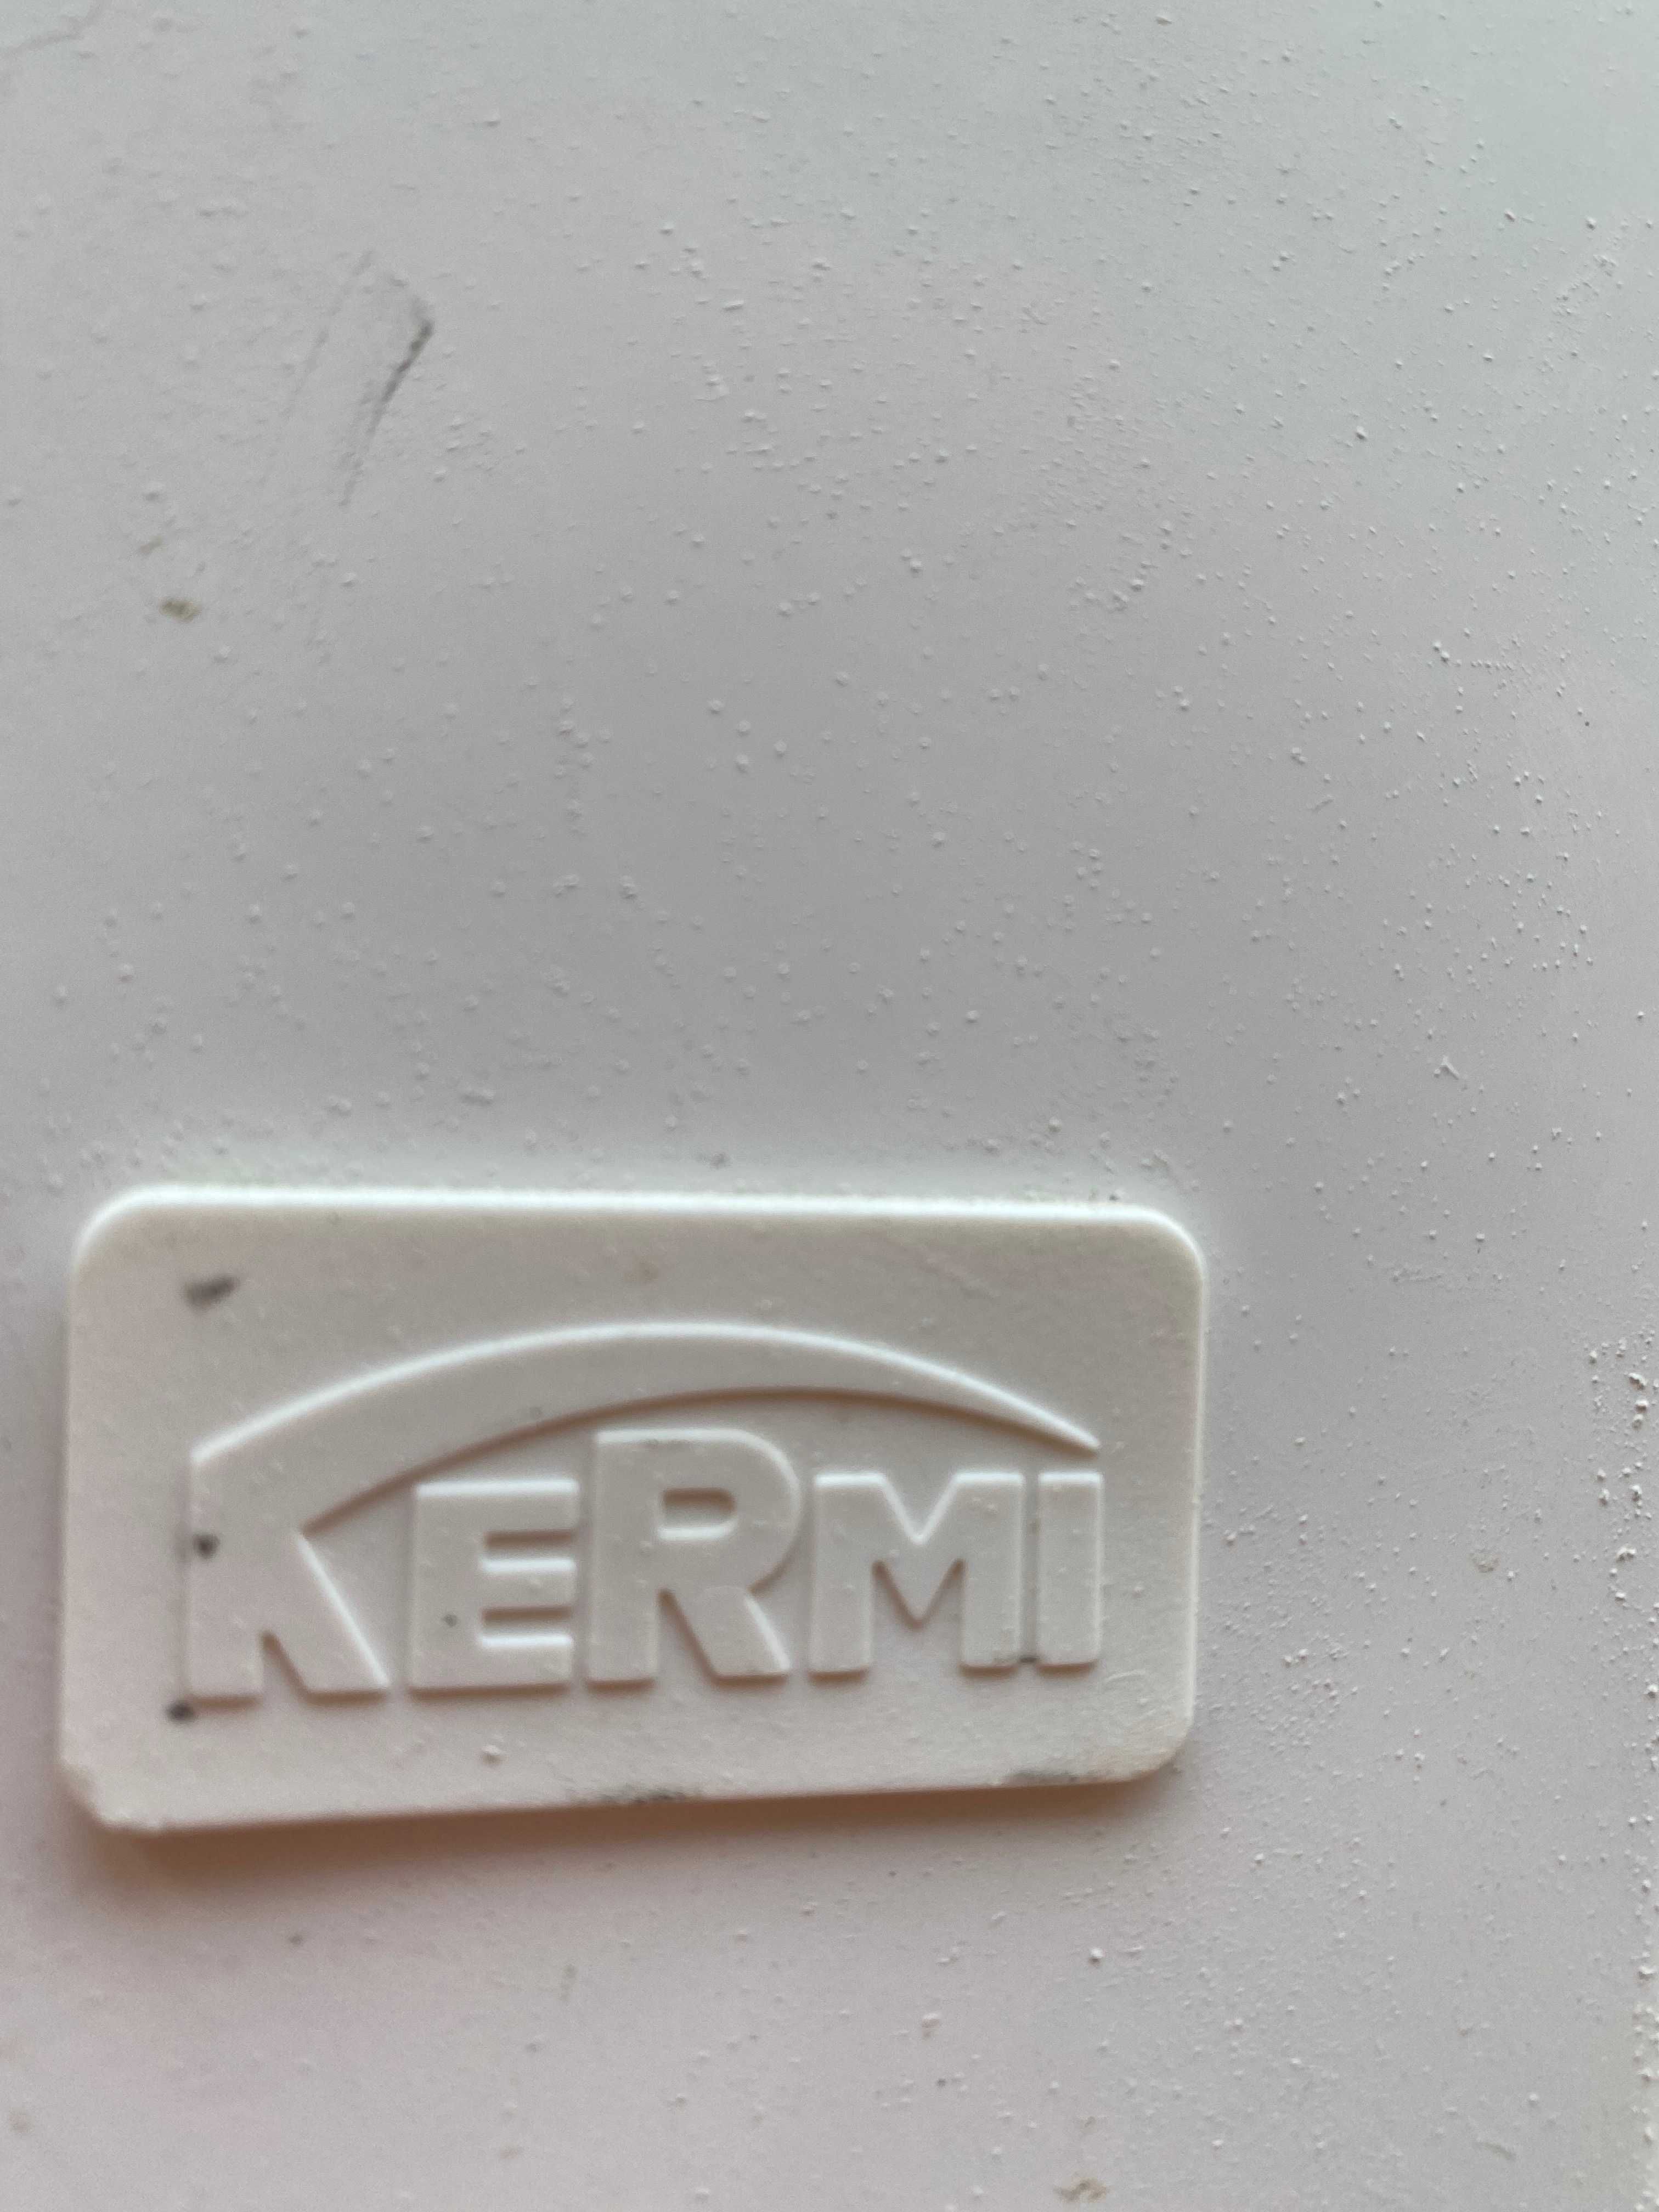 продам новые батареи KERMI - Германия